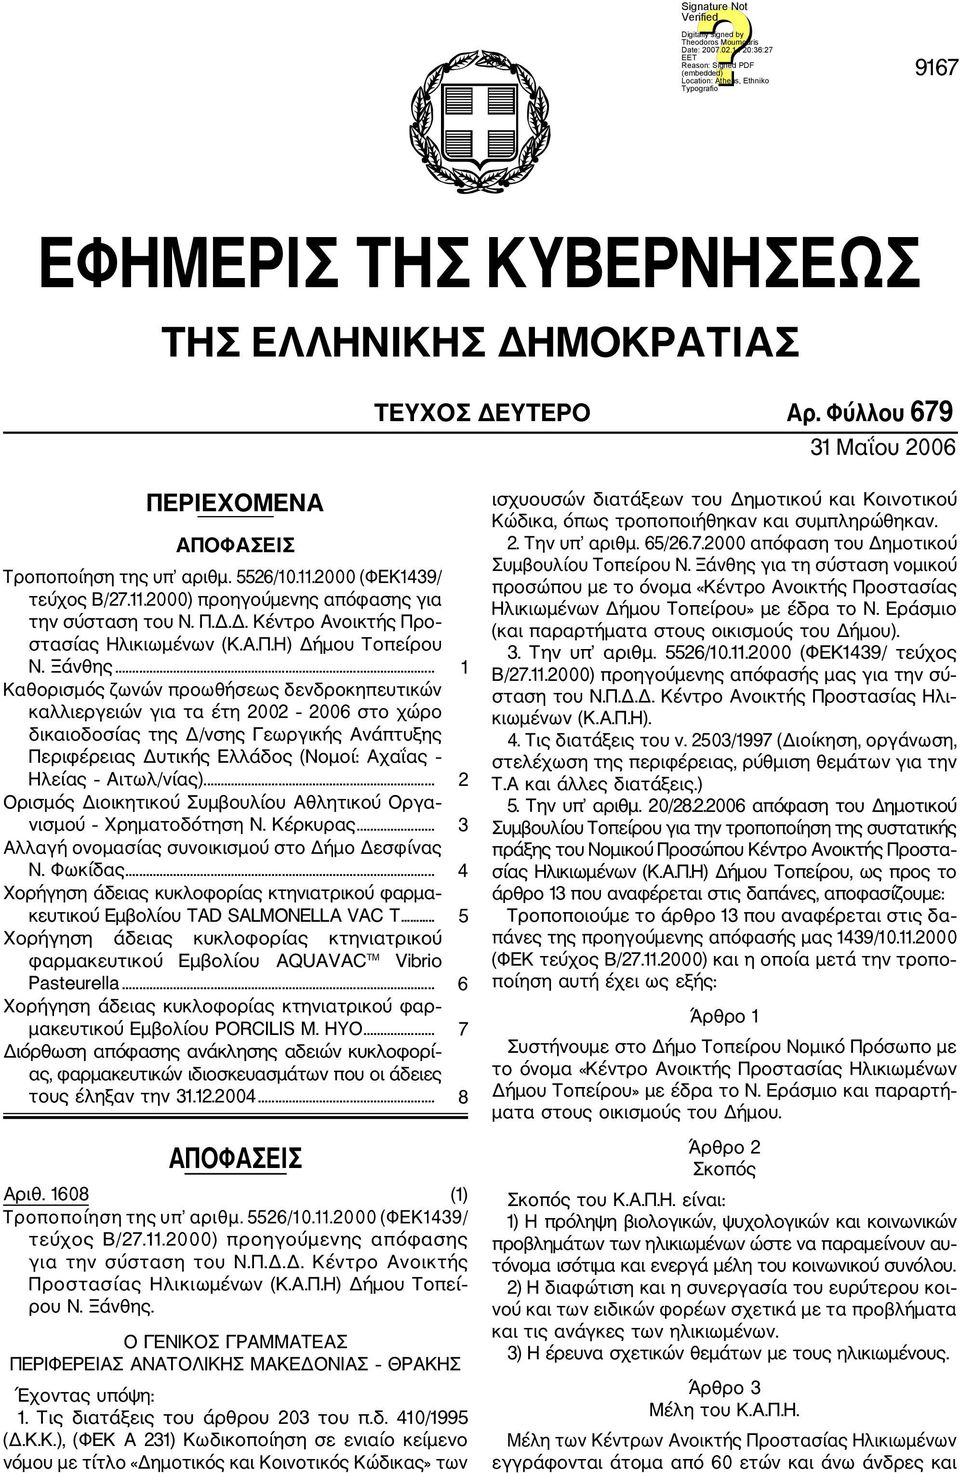 .. 1 Καθορισμός ζωνών προωθήσεως δενδροκηπευτικών καλλιεργειών για τα έτη 2002 2006 στο χώρο δικαιοδοσίας της Δ/νσης Γεωργικής Ανάπτυξης Περιφέρειας Δυτικής Ελλάδος (Νομοί: Αχαΐας Ηλείας Αιτωλ/νίας).